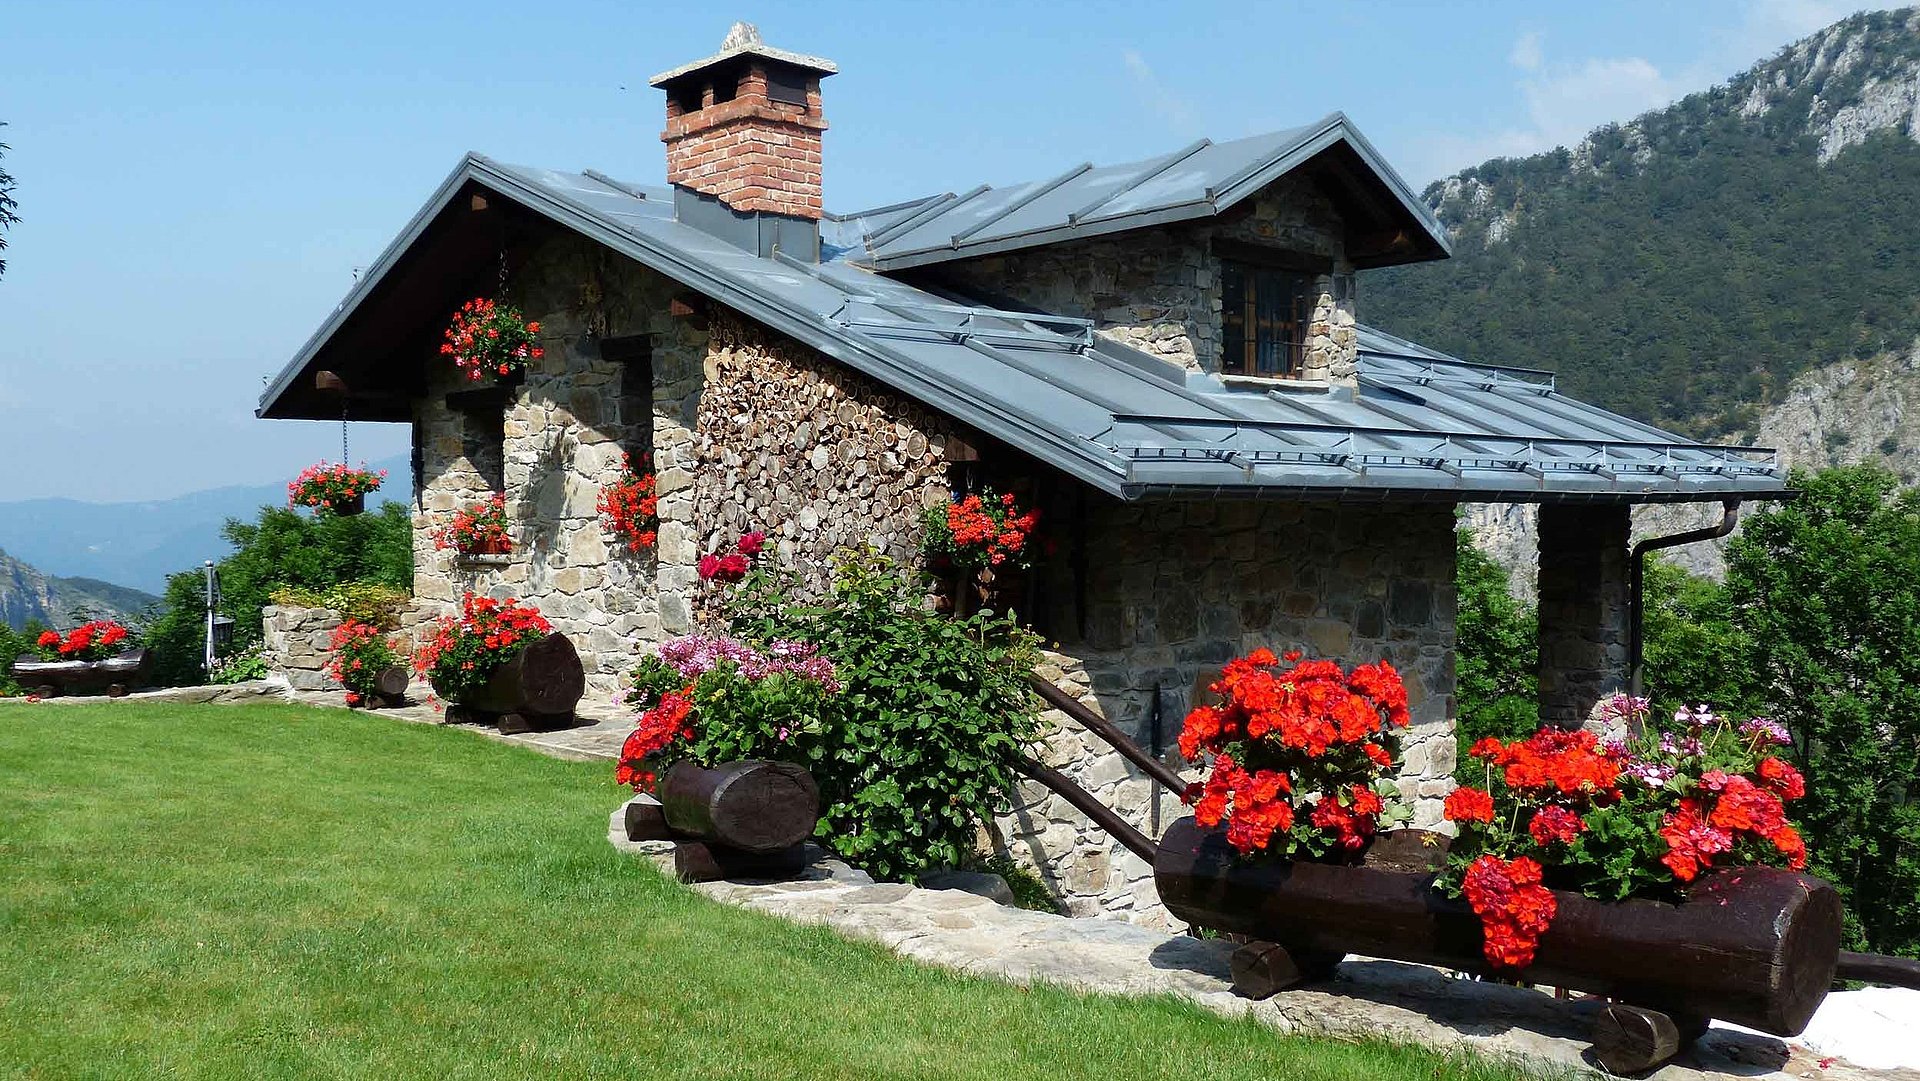 Exklusive Ferienwohnung in Franken - großes Ferienhaus mit ordentlichem Garten und Hügellandschaft im Hintergrund 